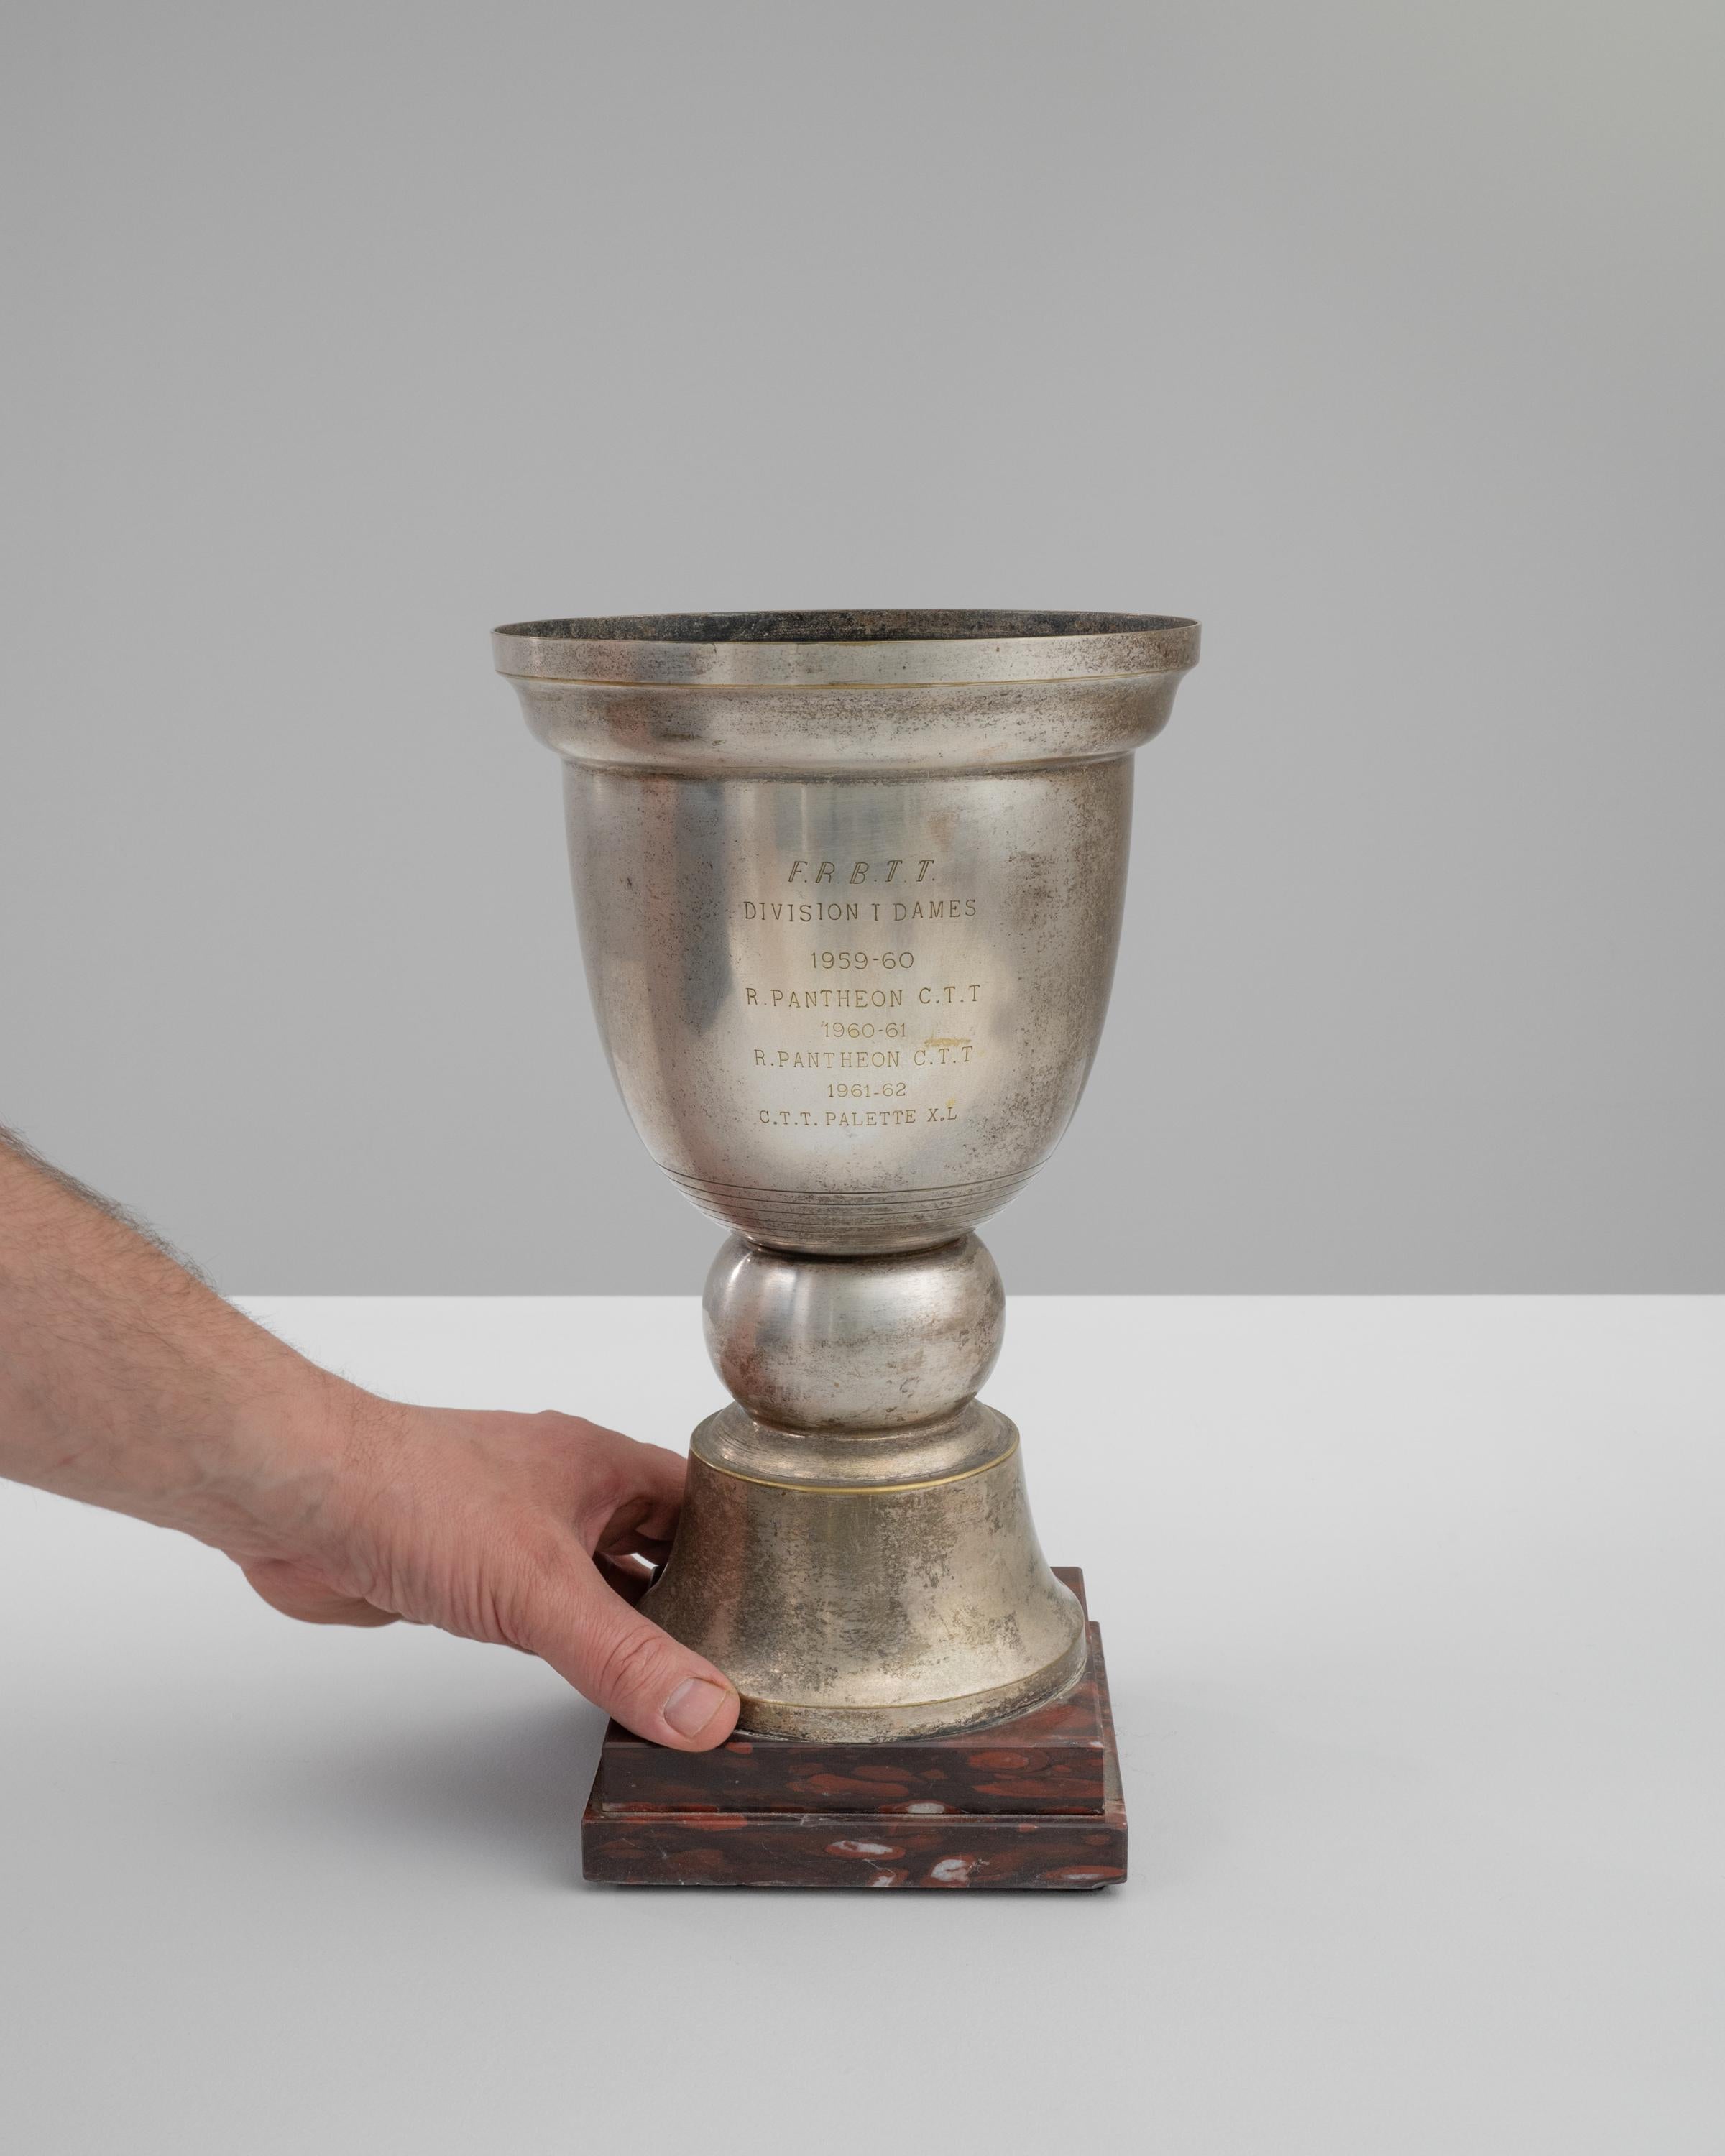 Versetzen Sie sich mit dieser prächtigen französischen Pokal-Trophäe aus dem 20. Jahrhundert in die Vergangenheit zurück - ein wahres Zeugnis für sportliche Höchstleistungen und historische Sportereignisse. Dieser aus glänzendem Metall gefertigte